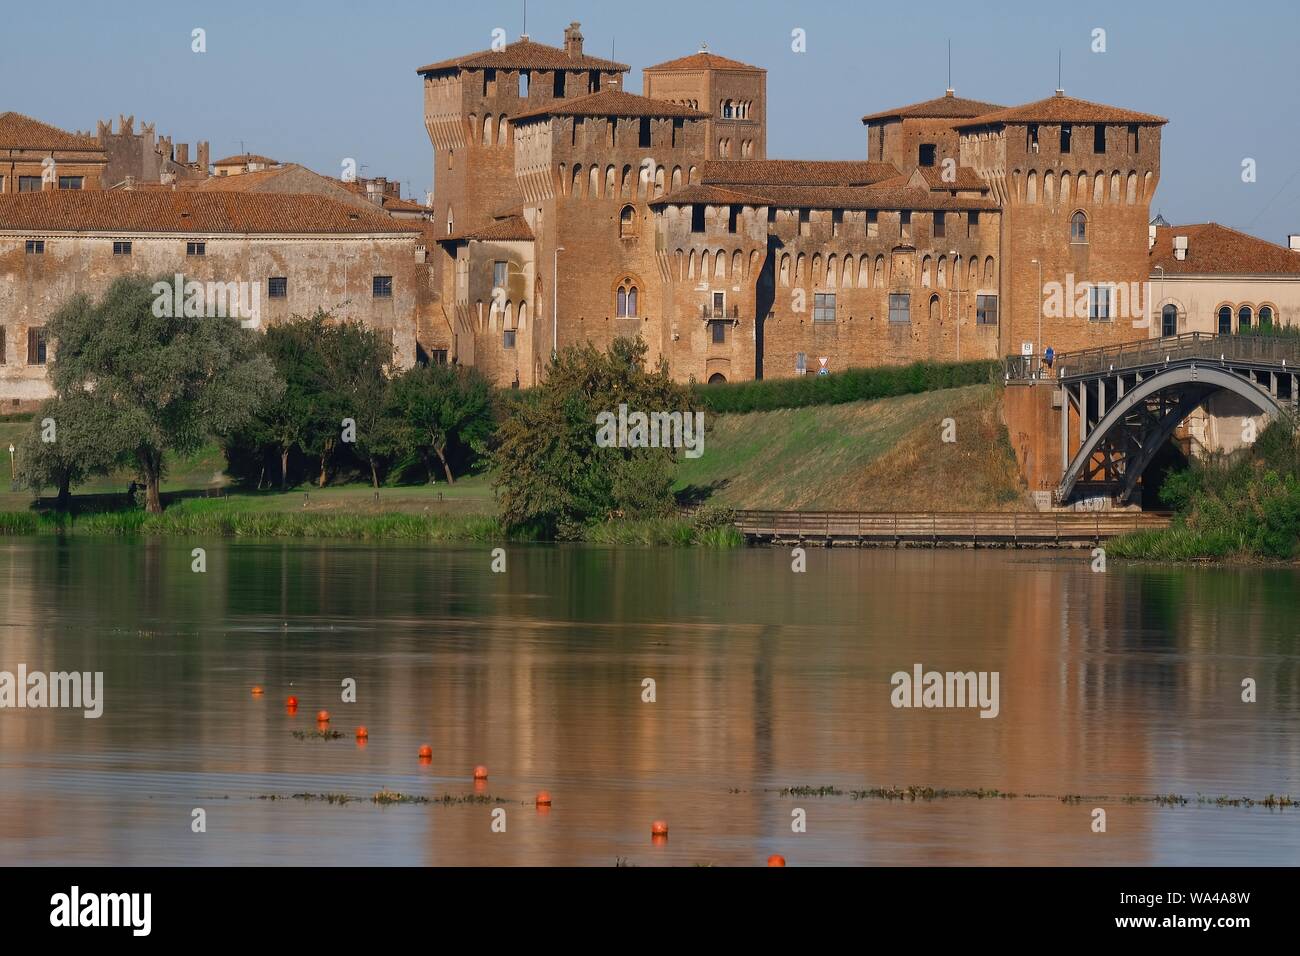 Vue sur la partie historique de la ville de Mantoue, Lombardie, Italie Banque D'Images